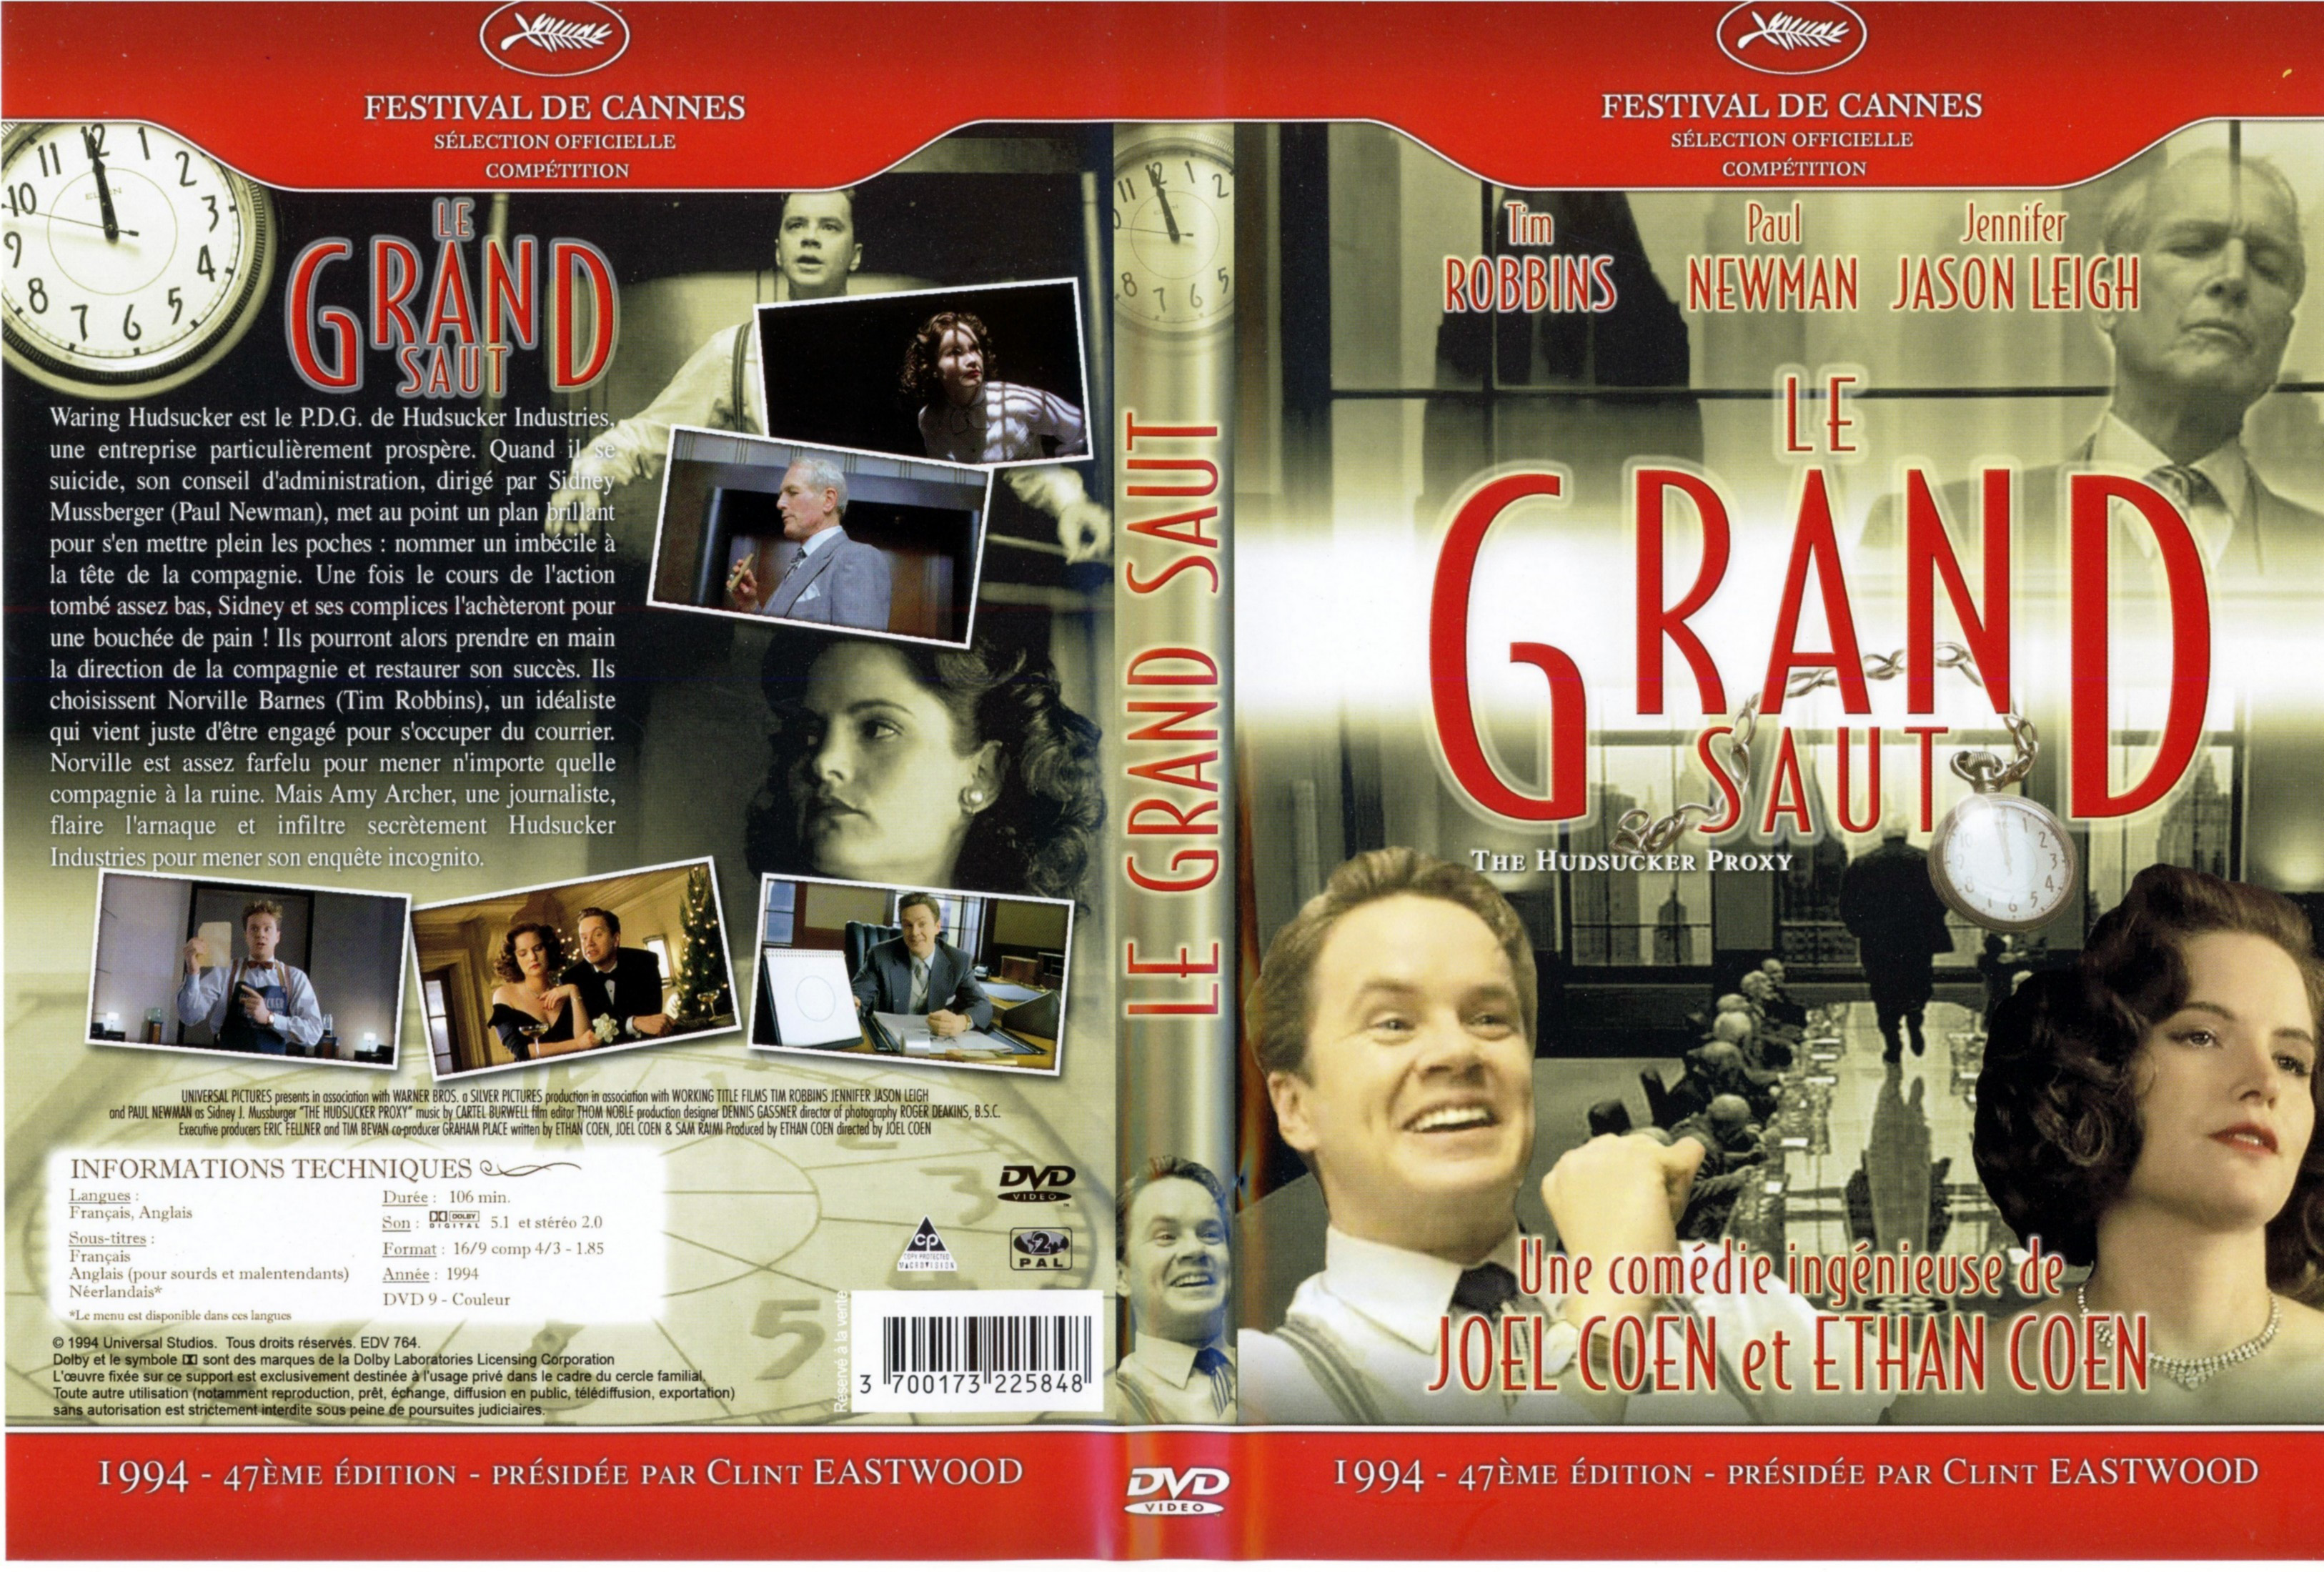 Jaquette DVD Le grand saut v2